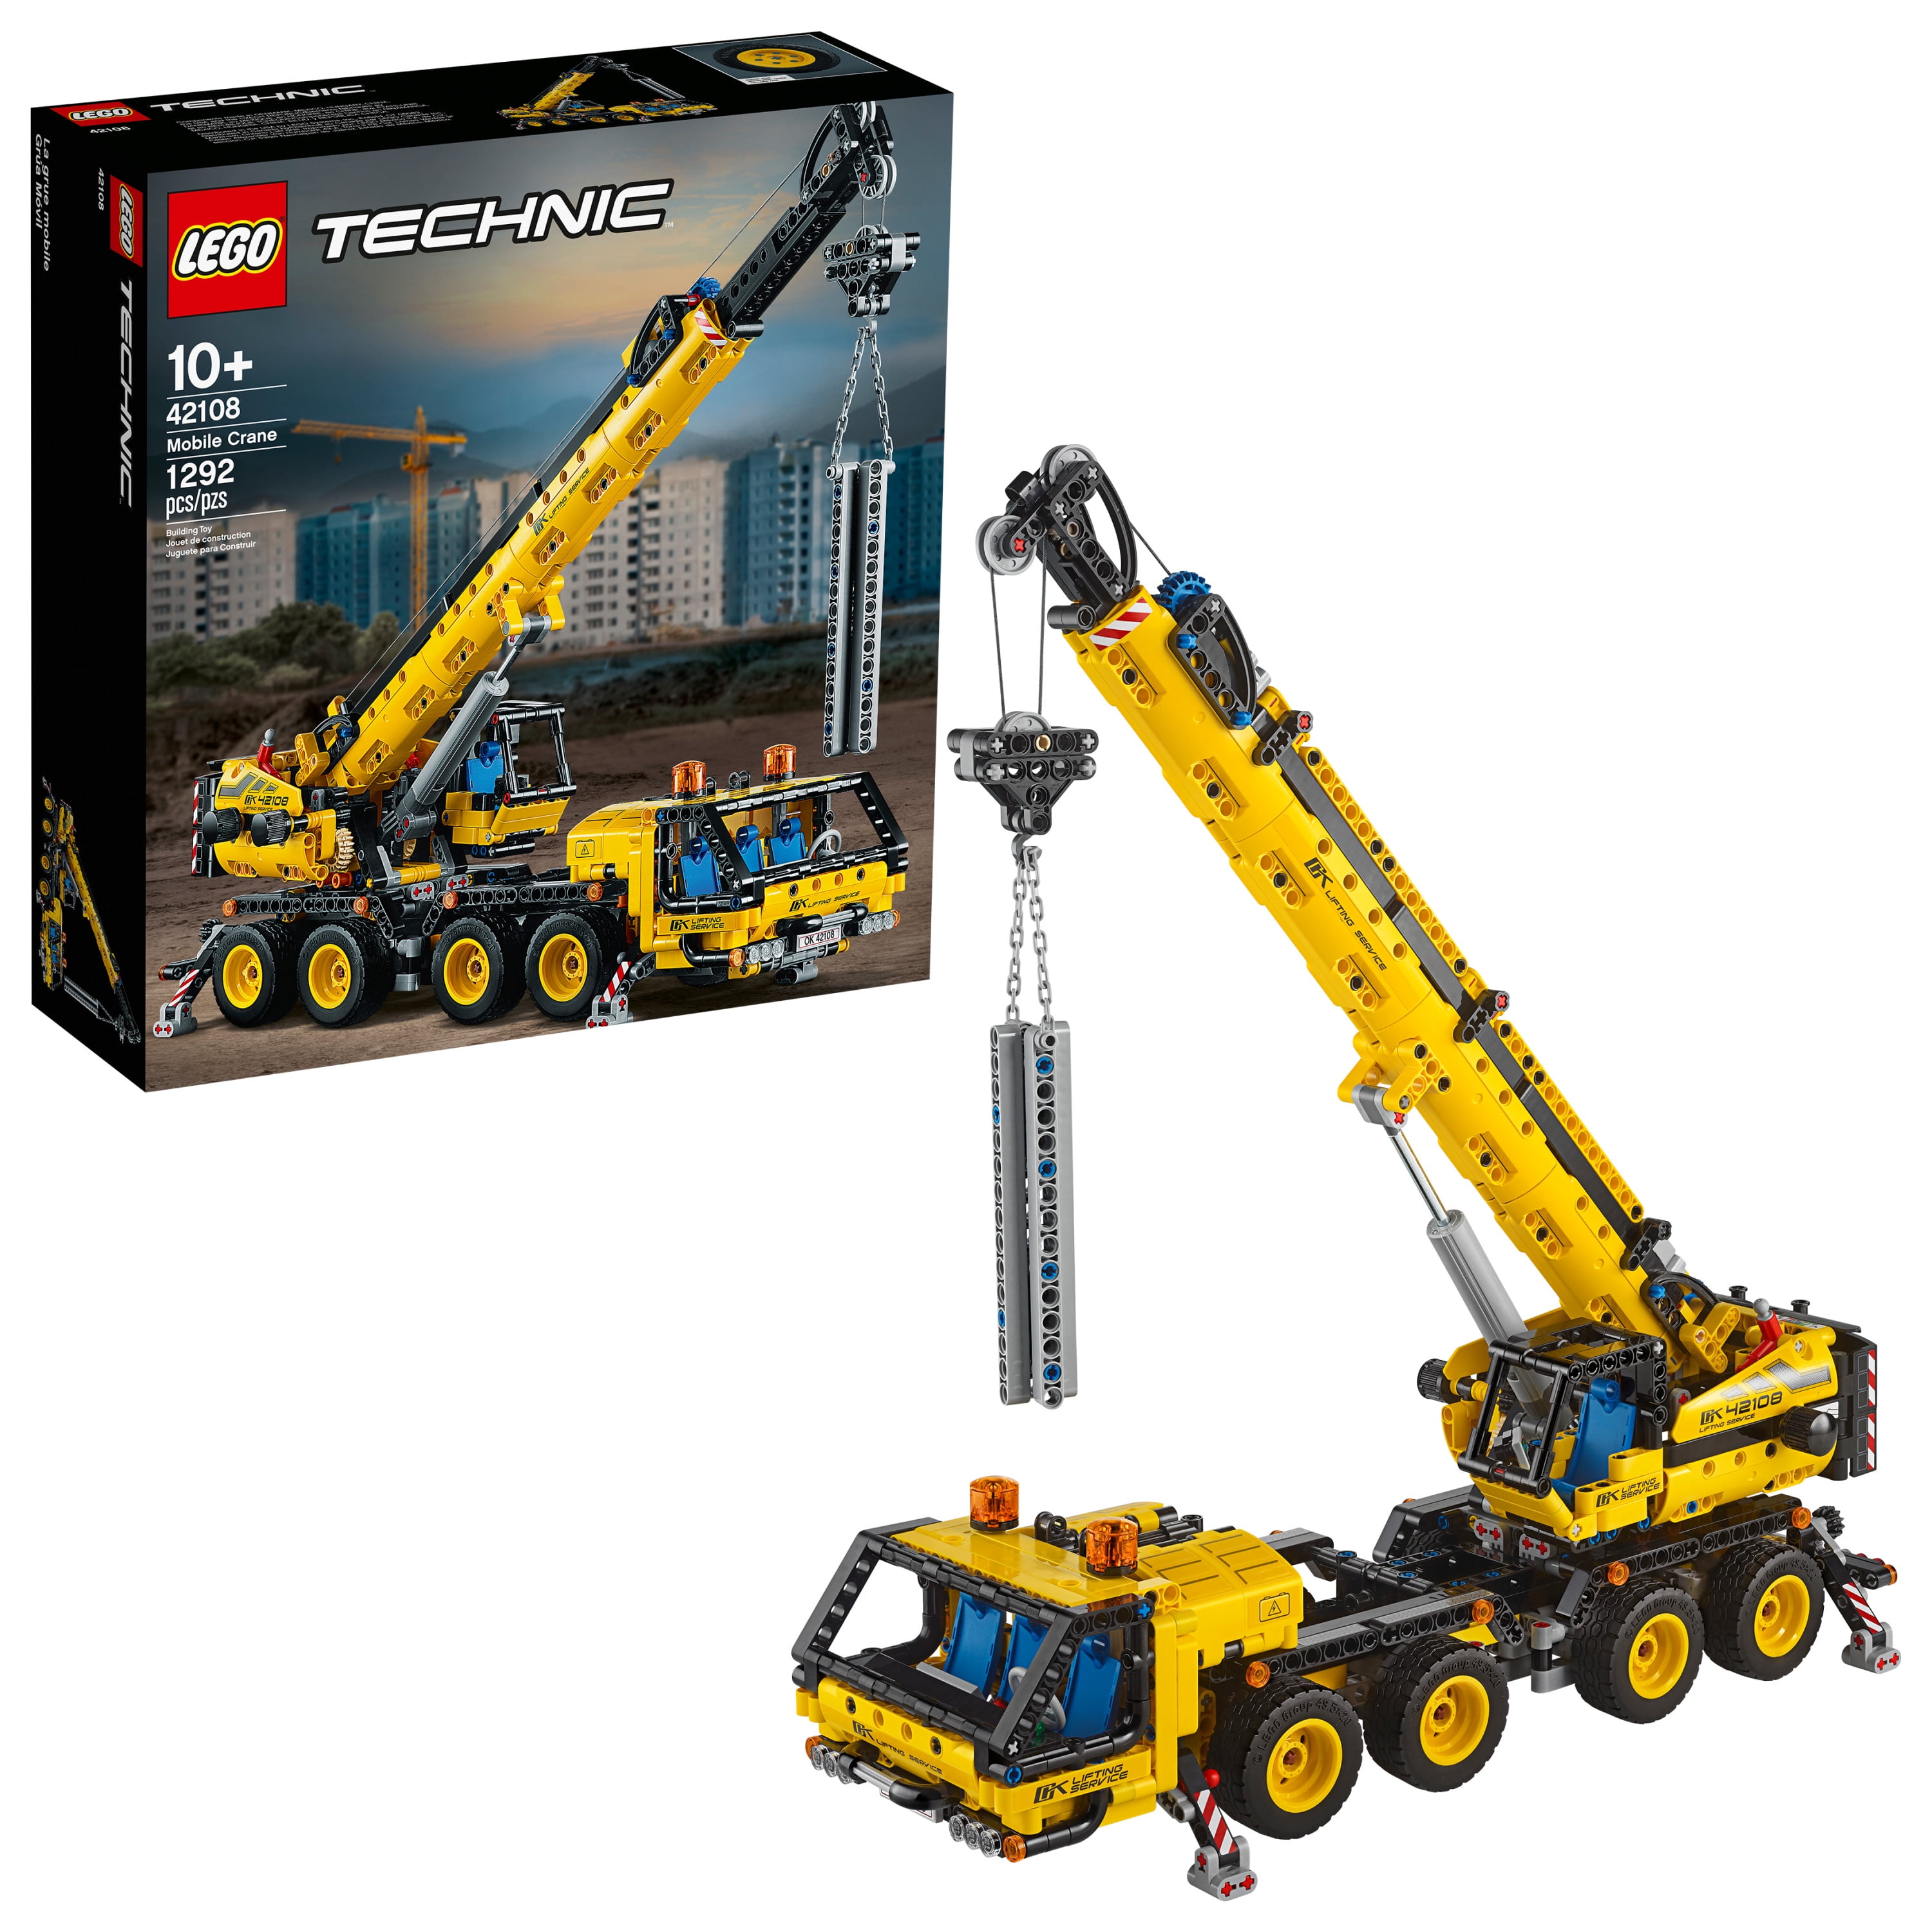 LEGO Technic Mobile Crane 42108 Construction Toy Building Kit (1,292 pieces)